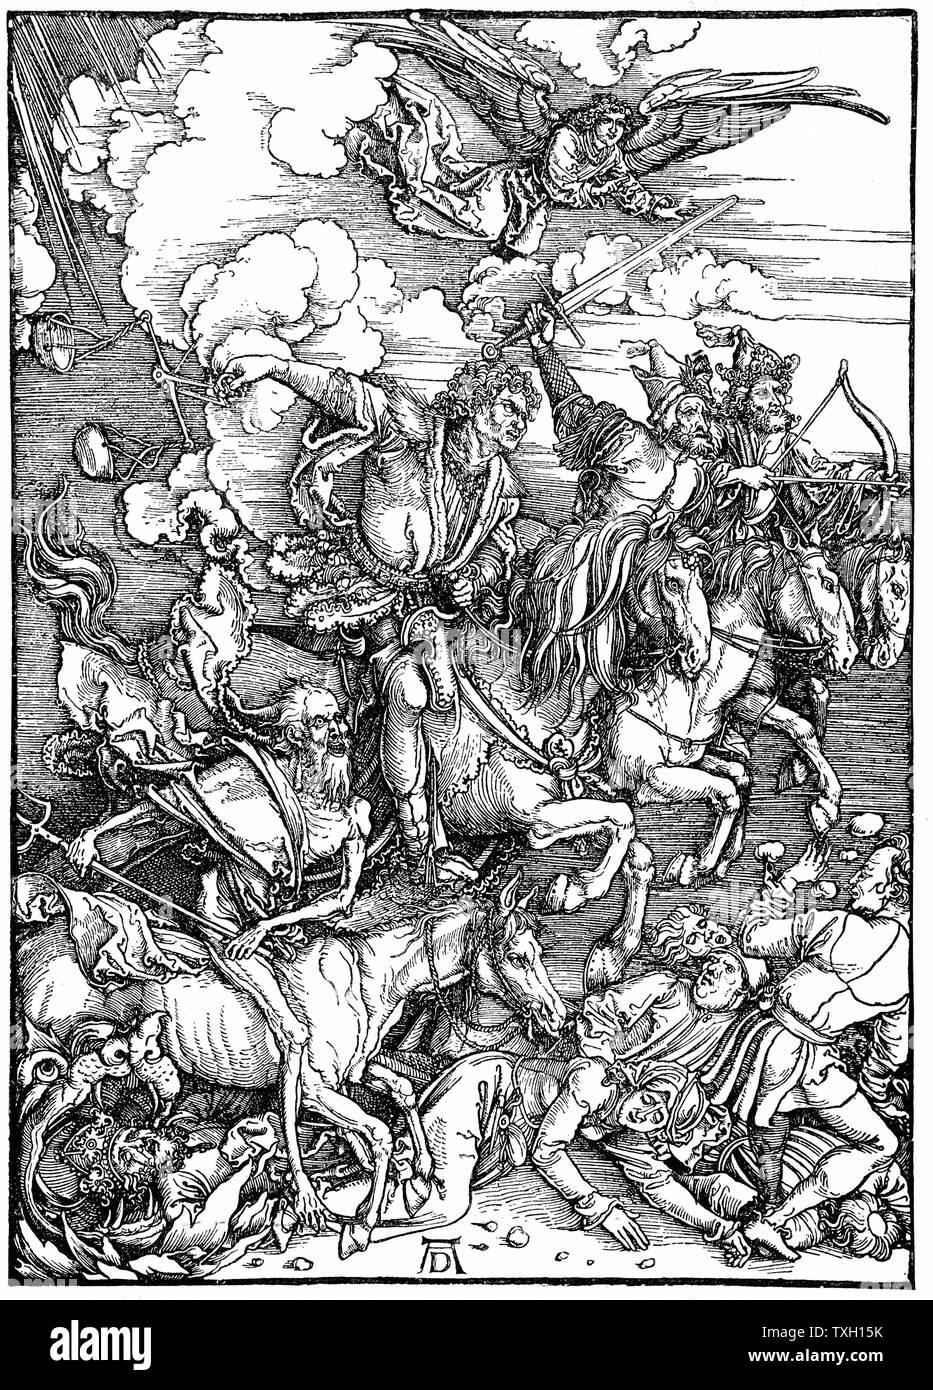 Quattro cavalieri dell'Apocalisse, che illustra 'Bibbia' Apocalisse di San Giovanni. Arcangelo orologi come quattro agenti di distruzione, due di guerra e uno ciascuno di carestie e pestilenze, galoppo in tutta la terra. Silografia di Albrecht Durer, 1498. Foto Stock